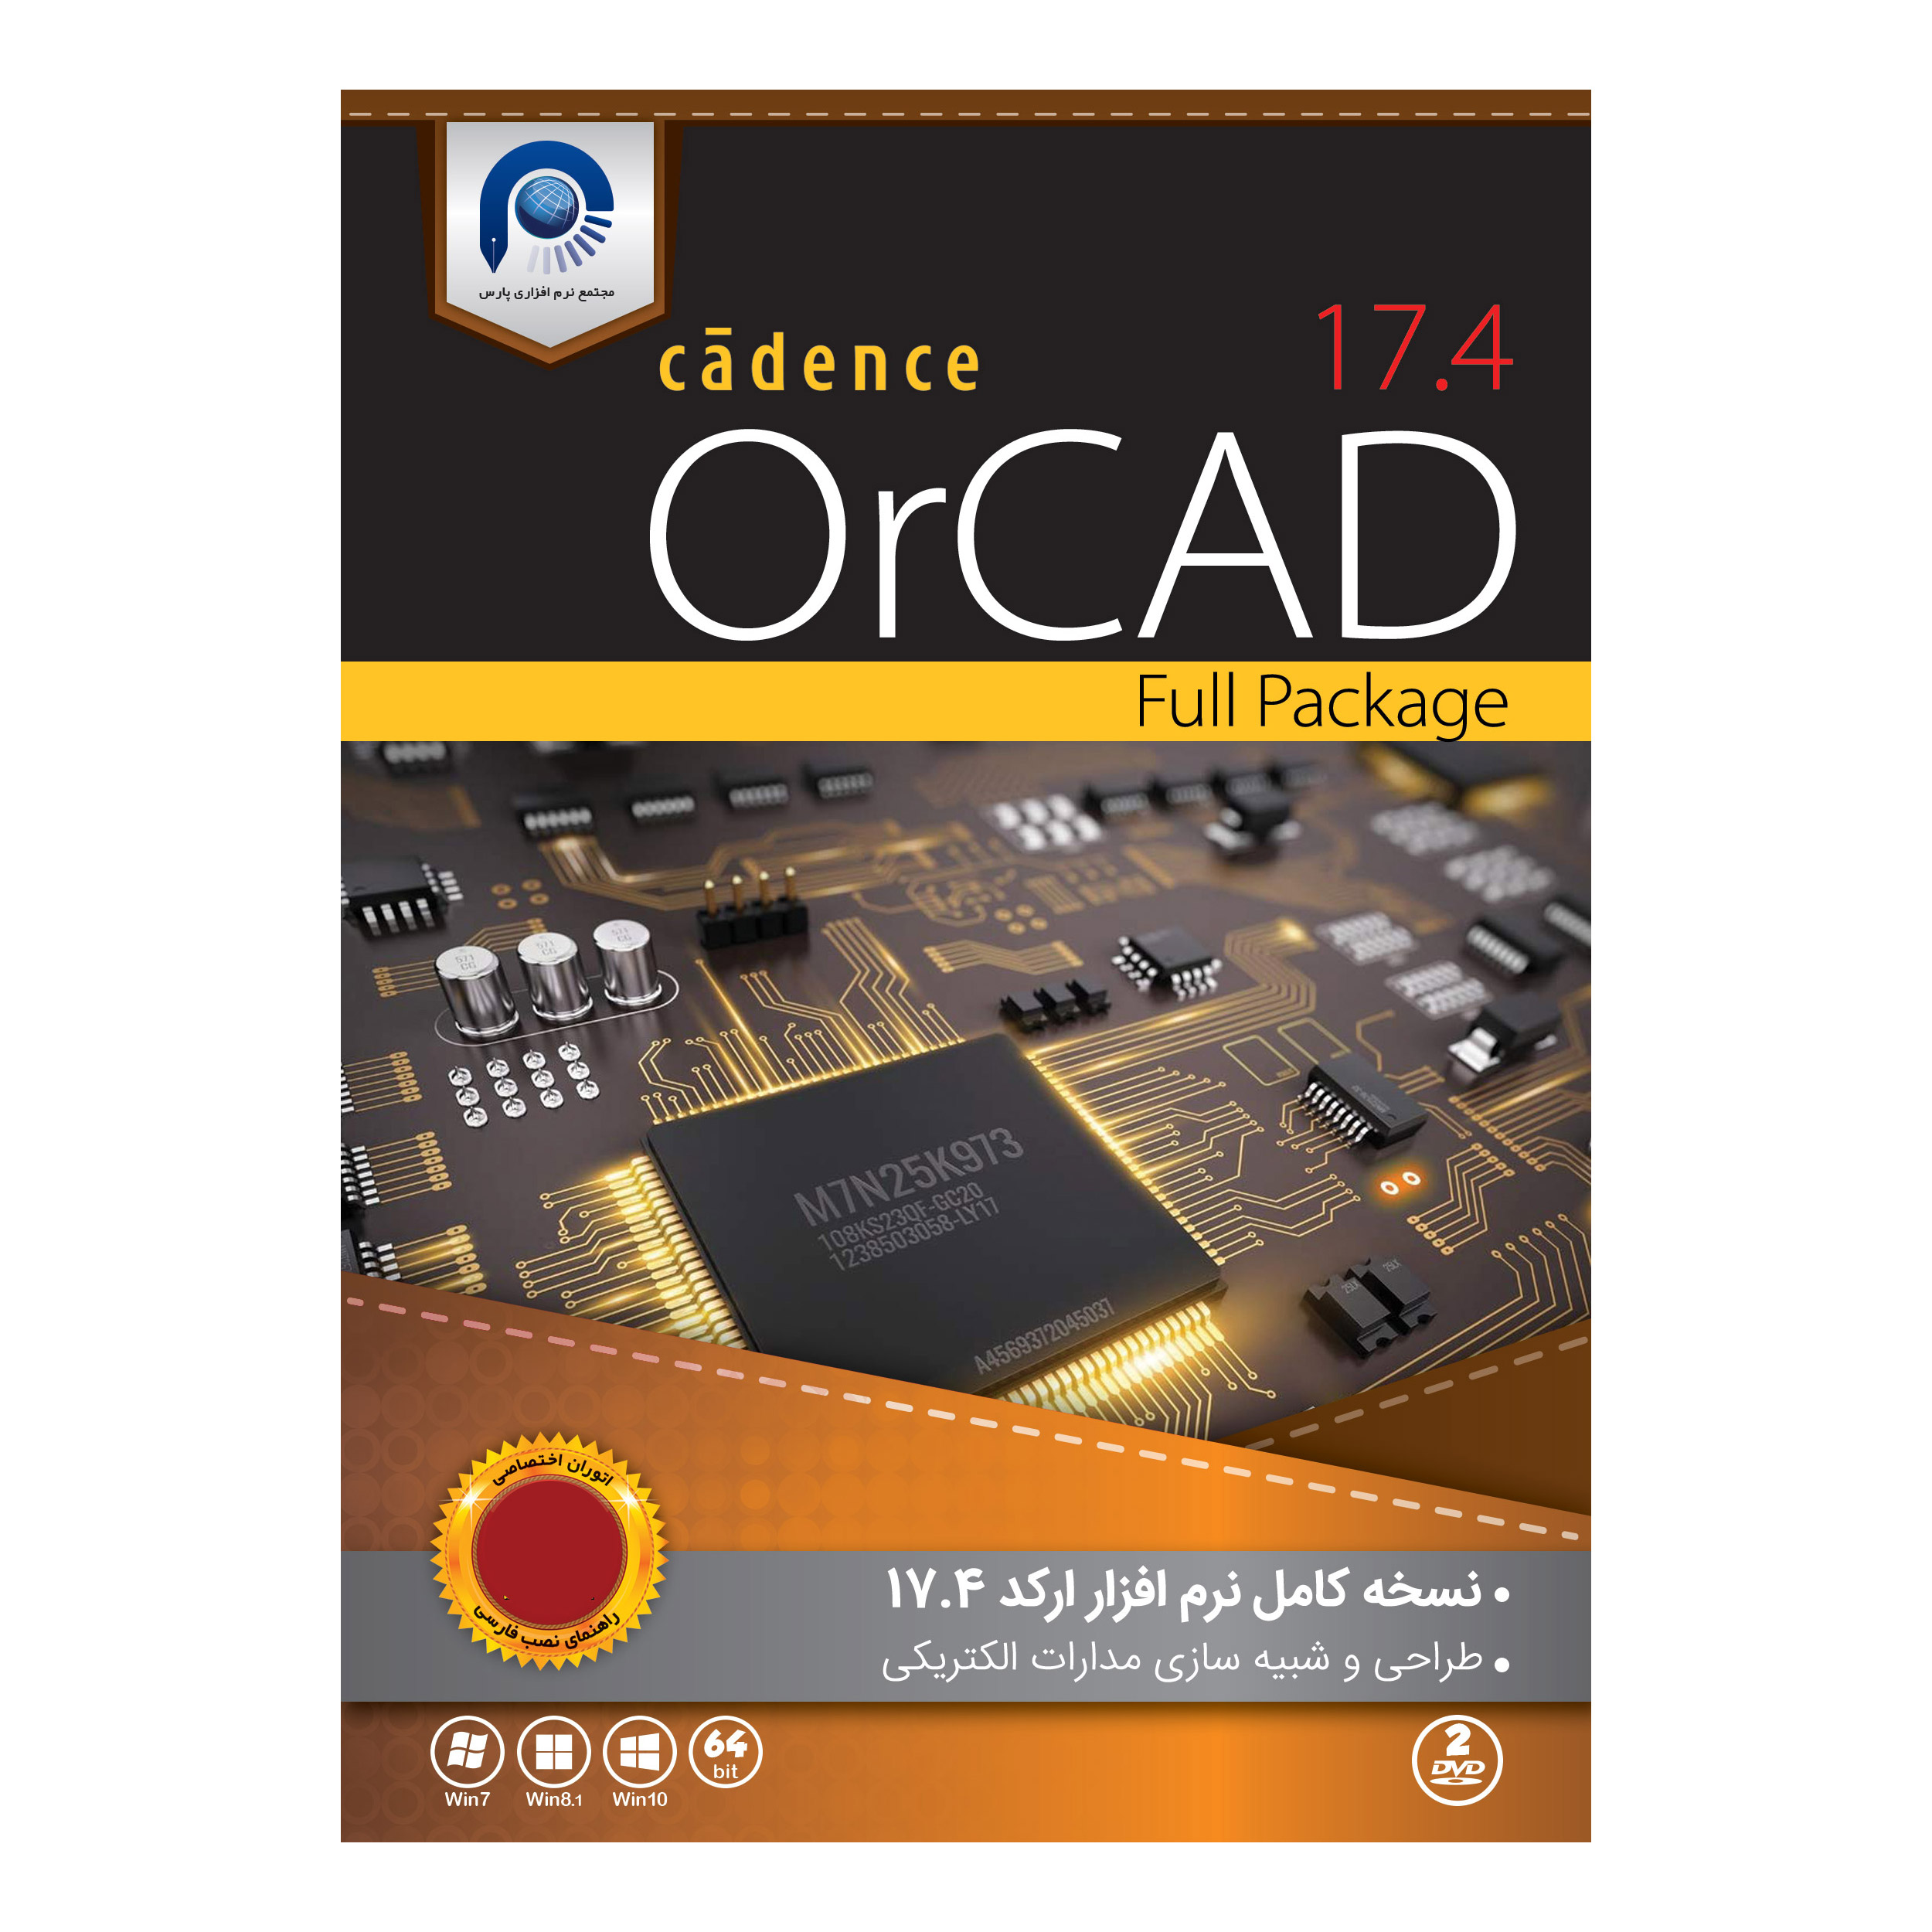 نرم افزار آموزش Orcad 17.4 نشر مجتمع نرم افزاری پارس